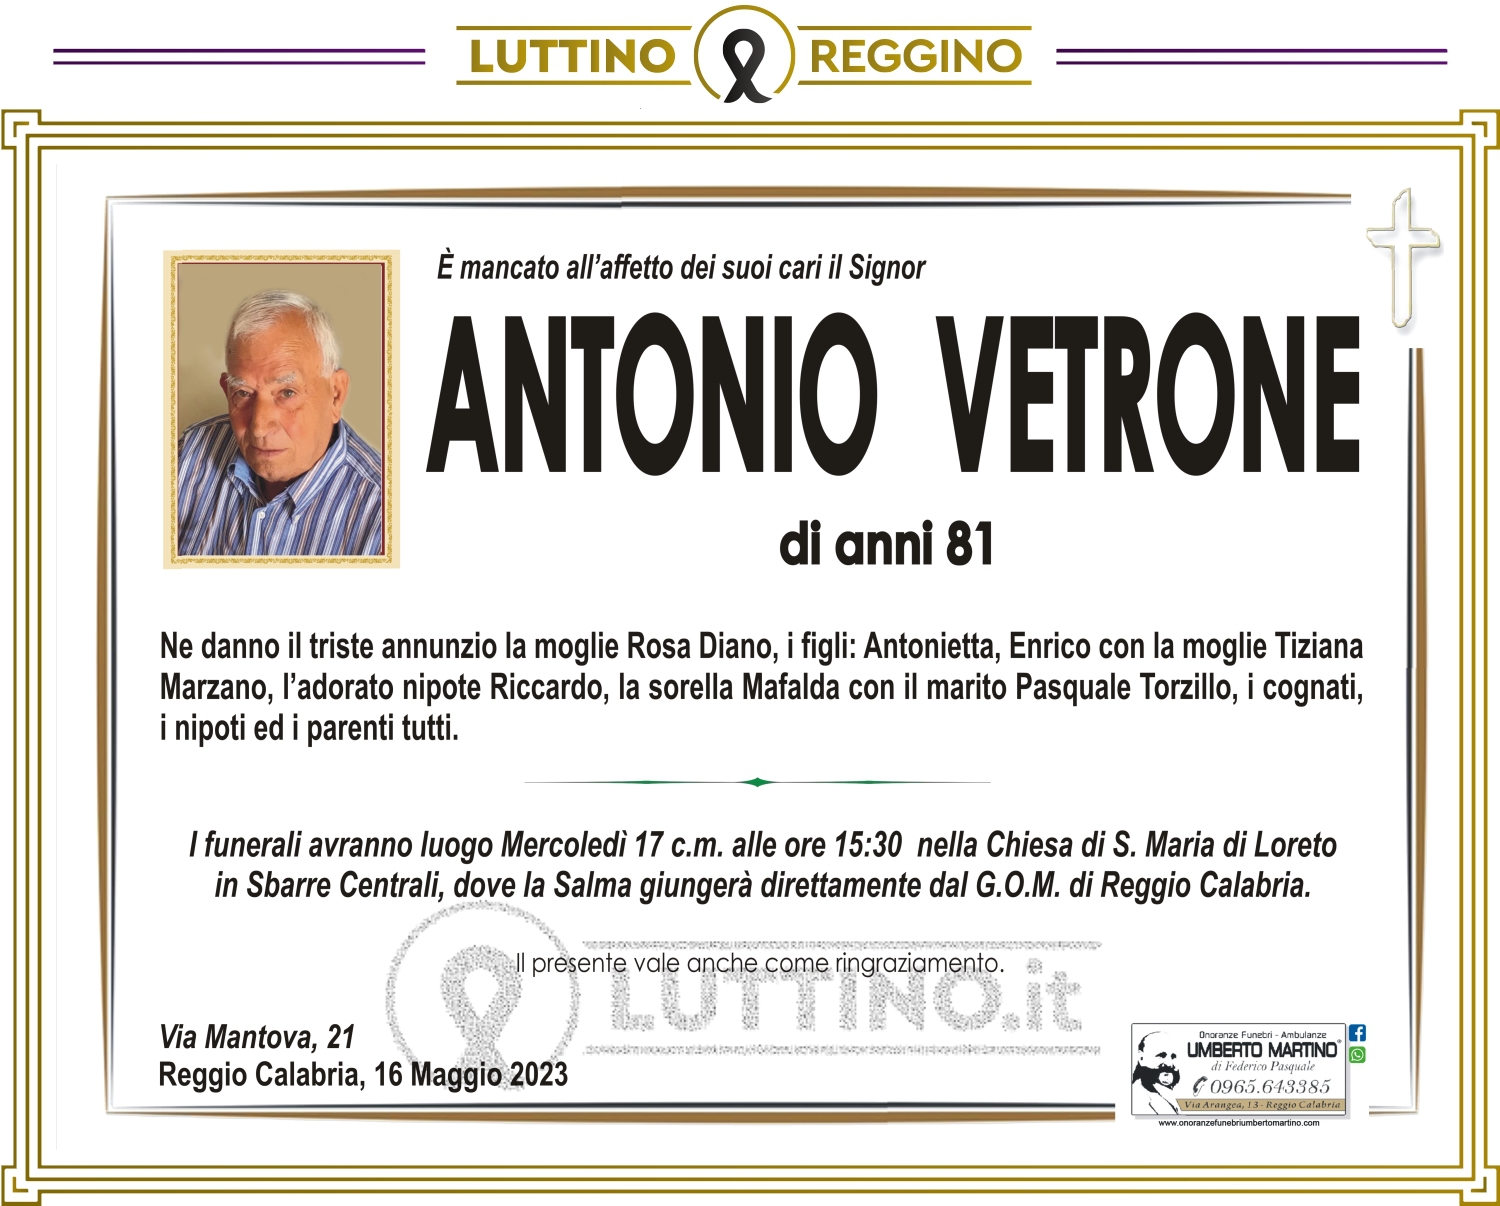 Antonio Vetrone